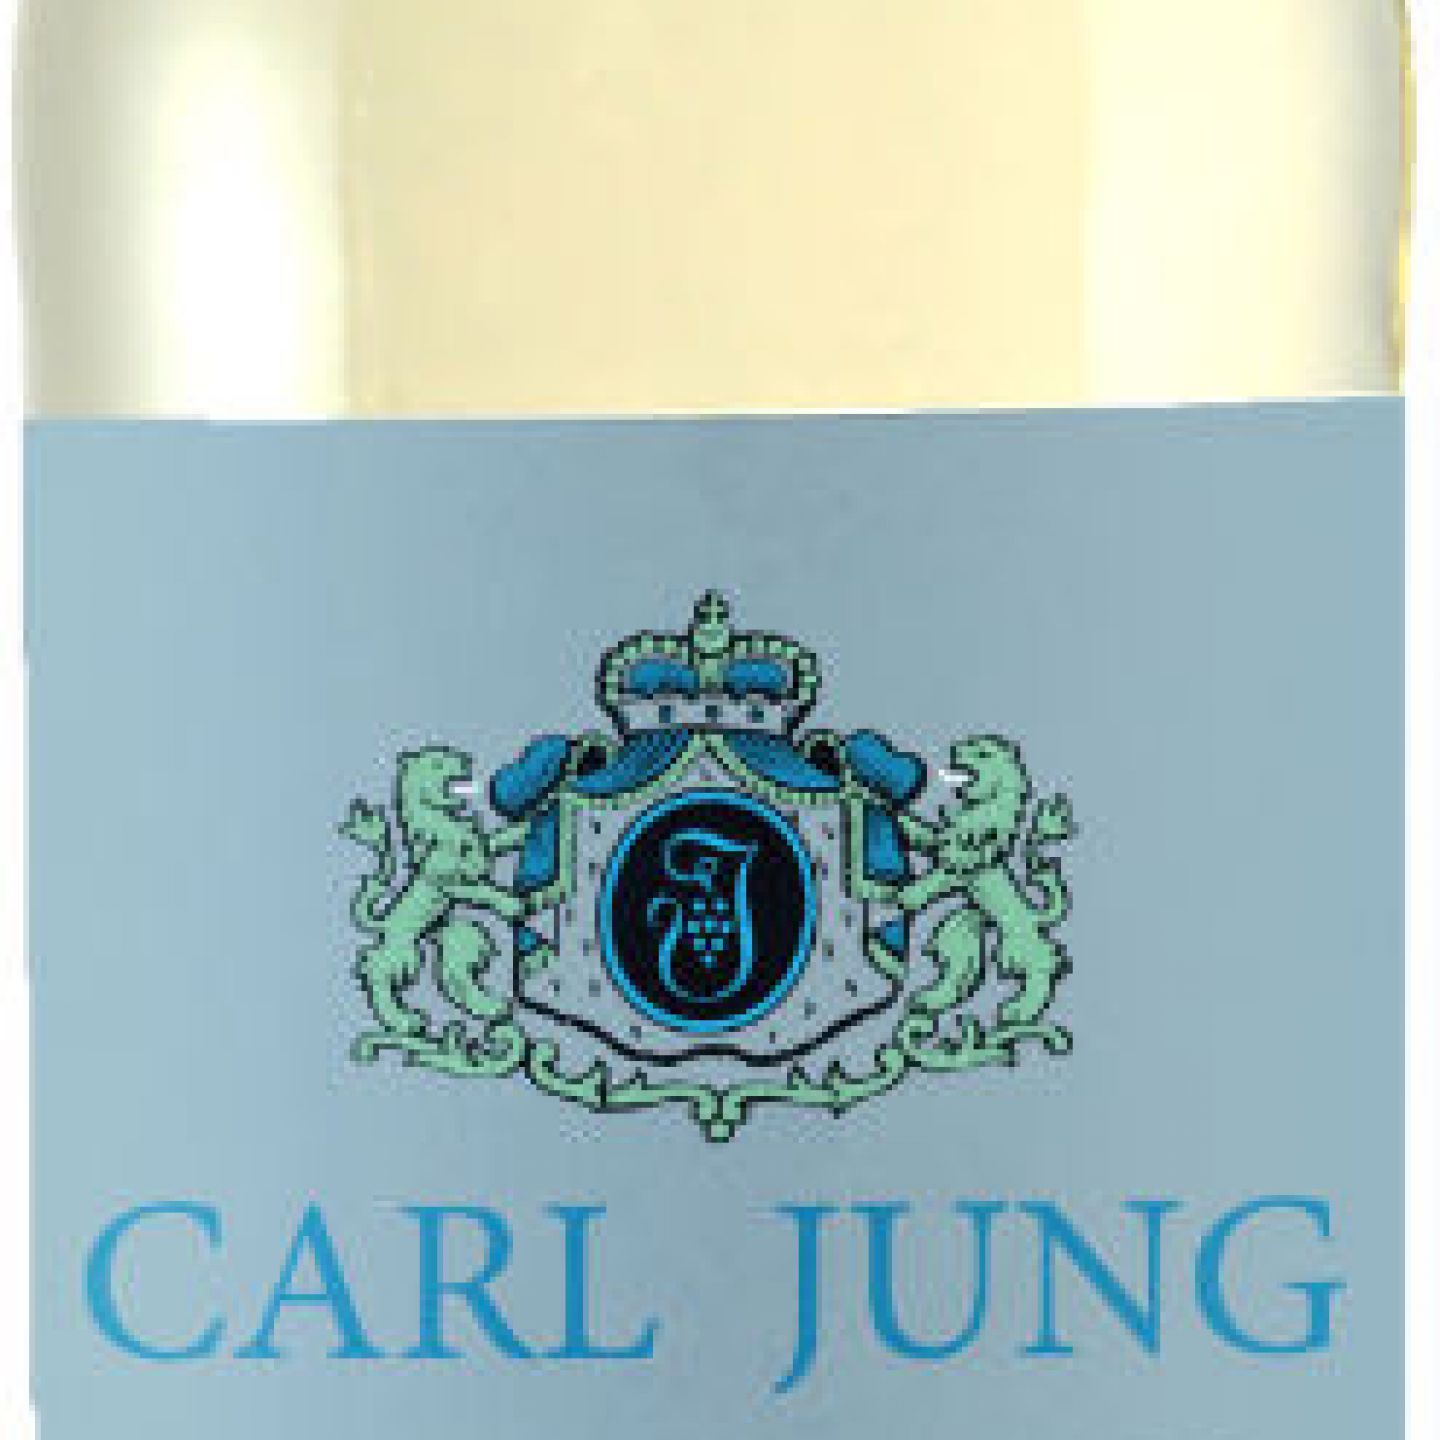 Carl Jung CHARDONNAY - - Standort Freiwein eine - VEGAN der Bauernladen alkoholfrei KG Marke Vinumis Tulln